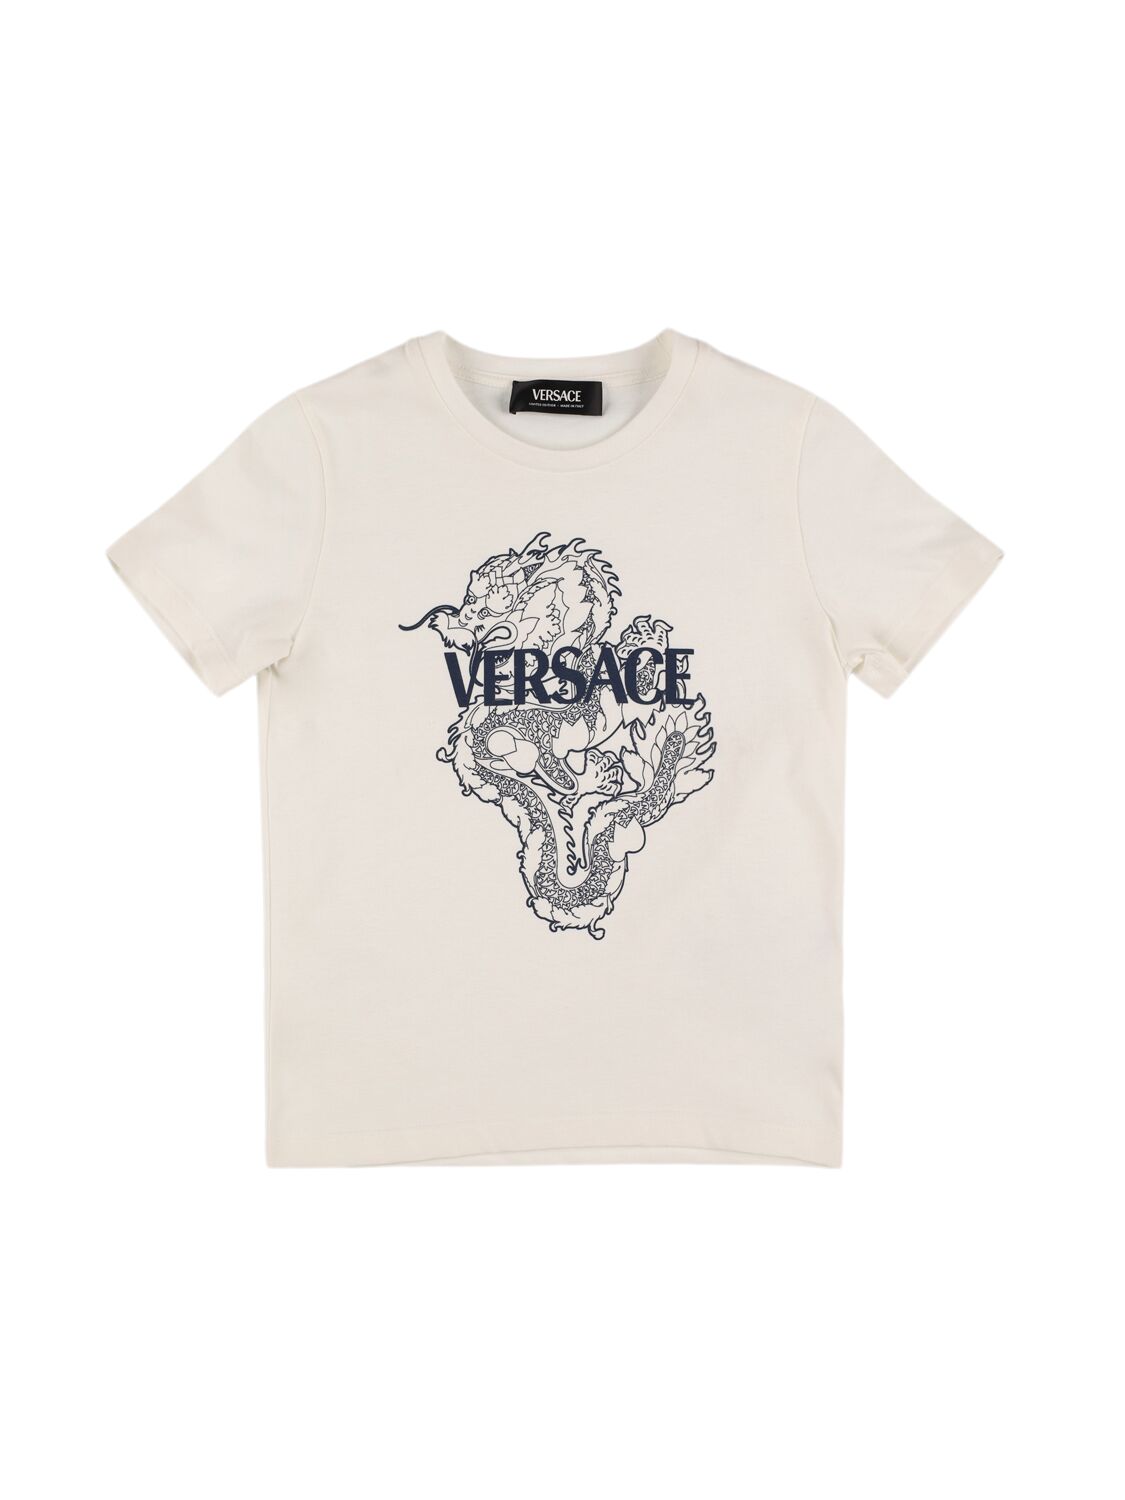 Versace Kids' Dragan Printed Cotton Jersey T-shirt In White,navy